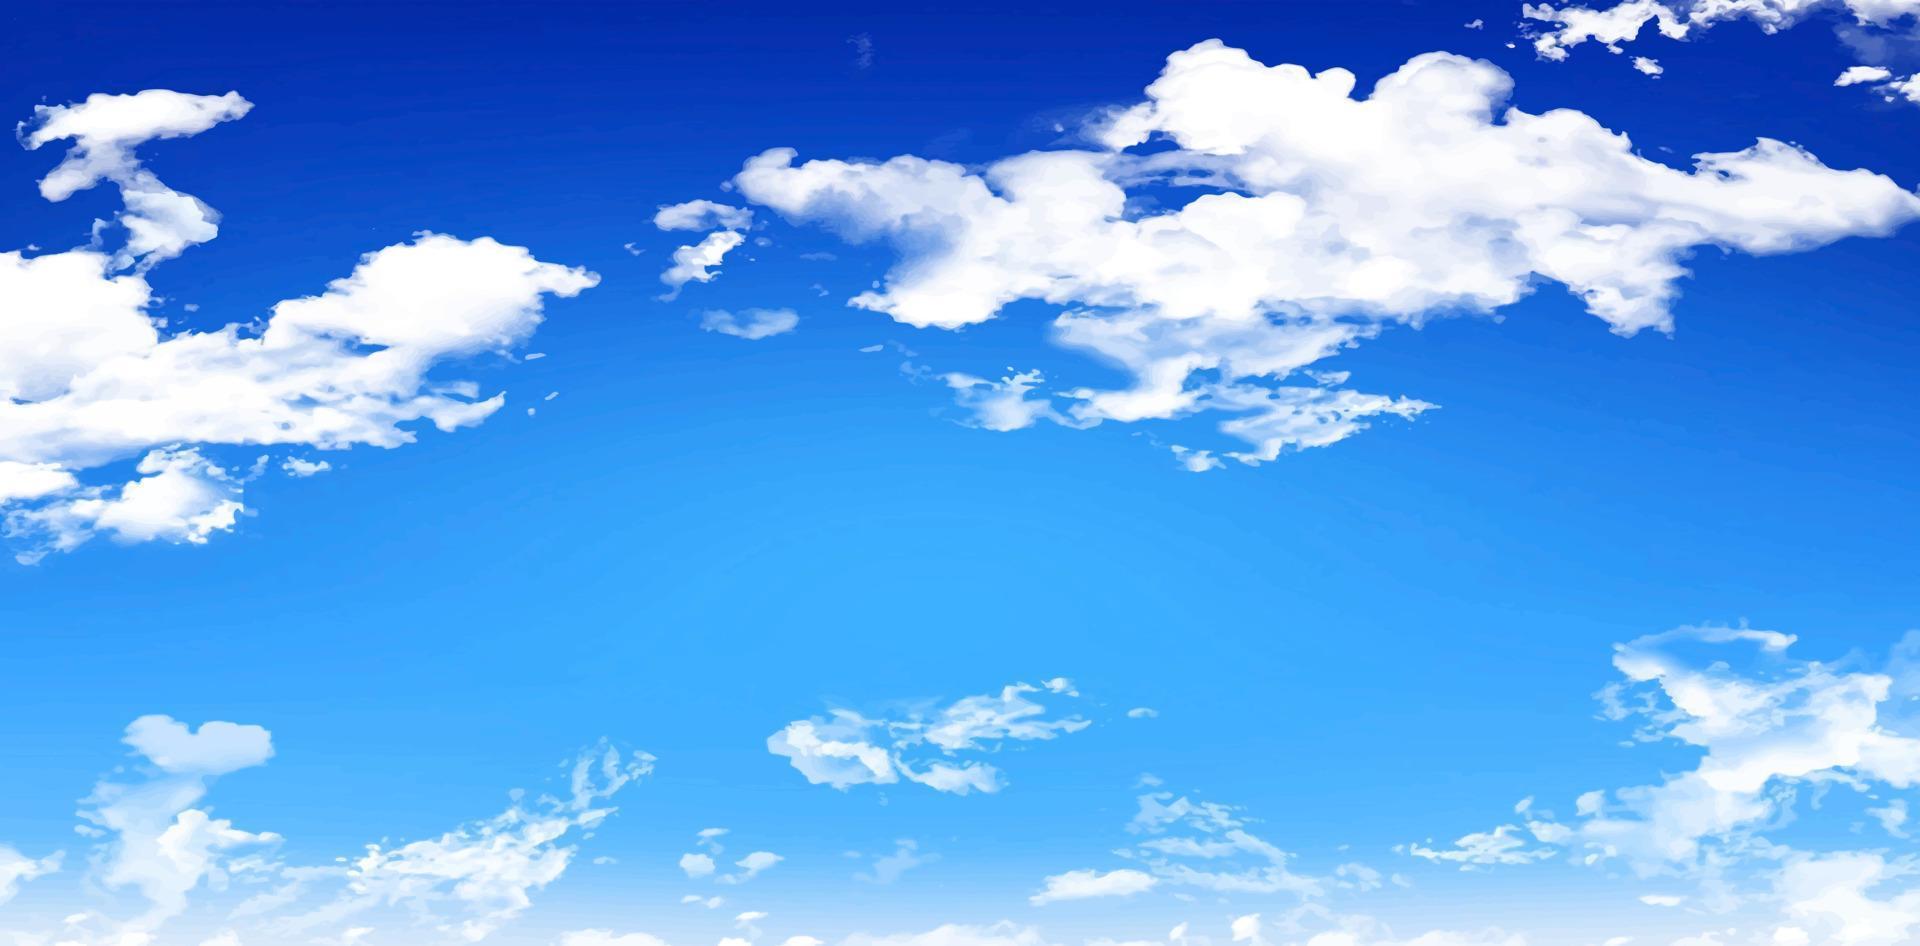 Illustration Blau Himmel mit Wolken Hintergründe zum Sommer- Hintergrund, e Handel Zeichen Verkauf Einkaufen, Werbung Geschäft Agentur, Anzeigen Kampagne Marketing, Kulissen Raum, Landung Seiten, Header Bahnen vektor